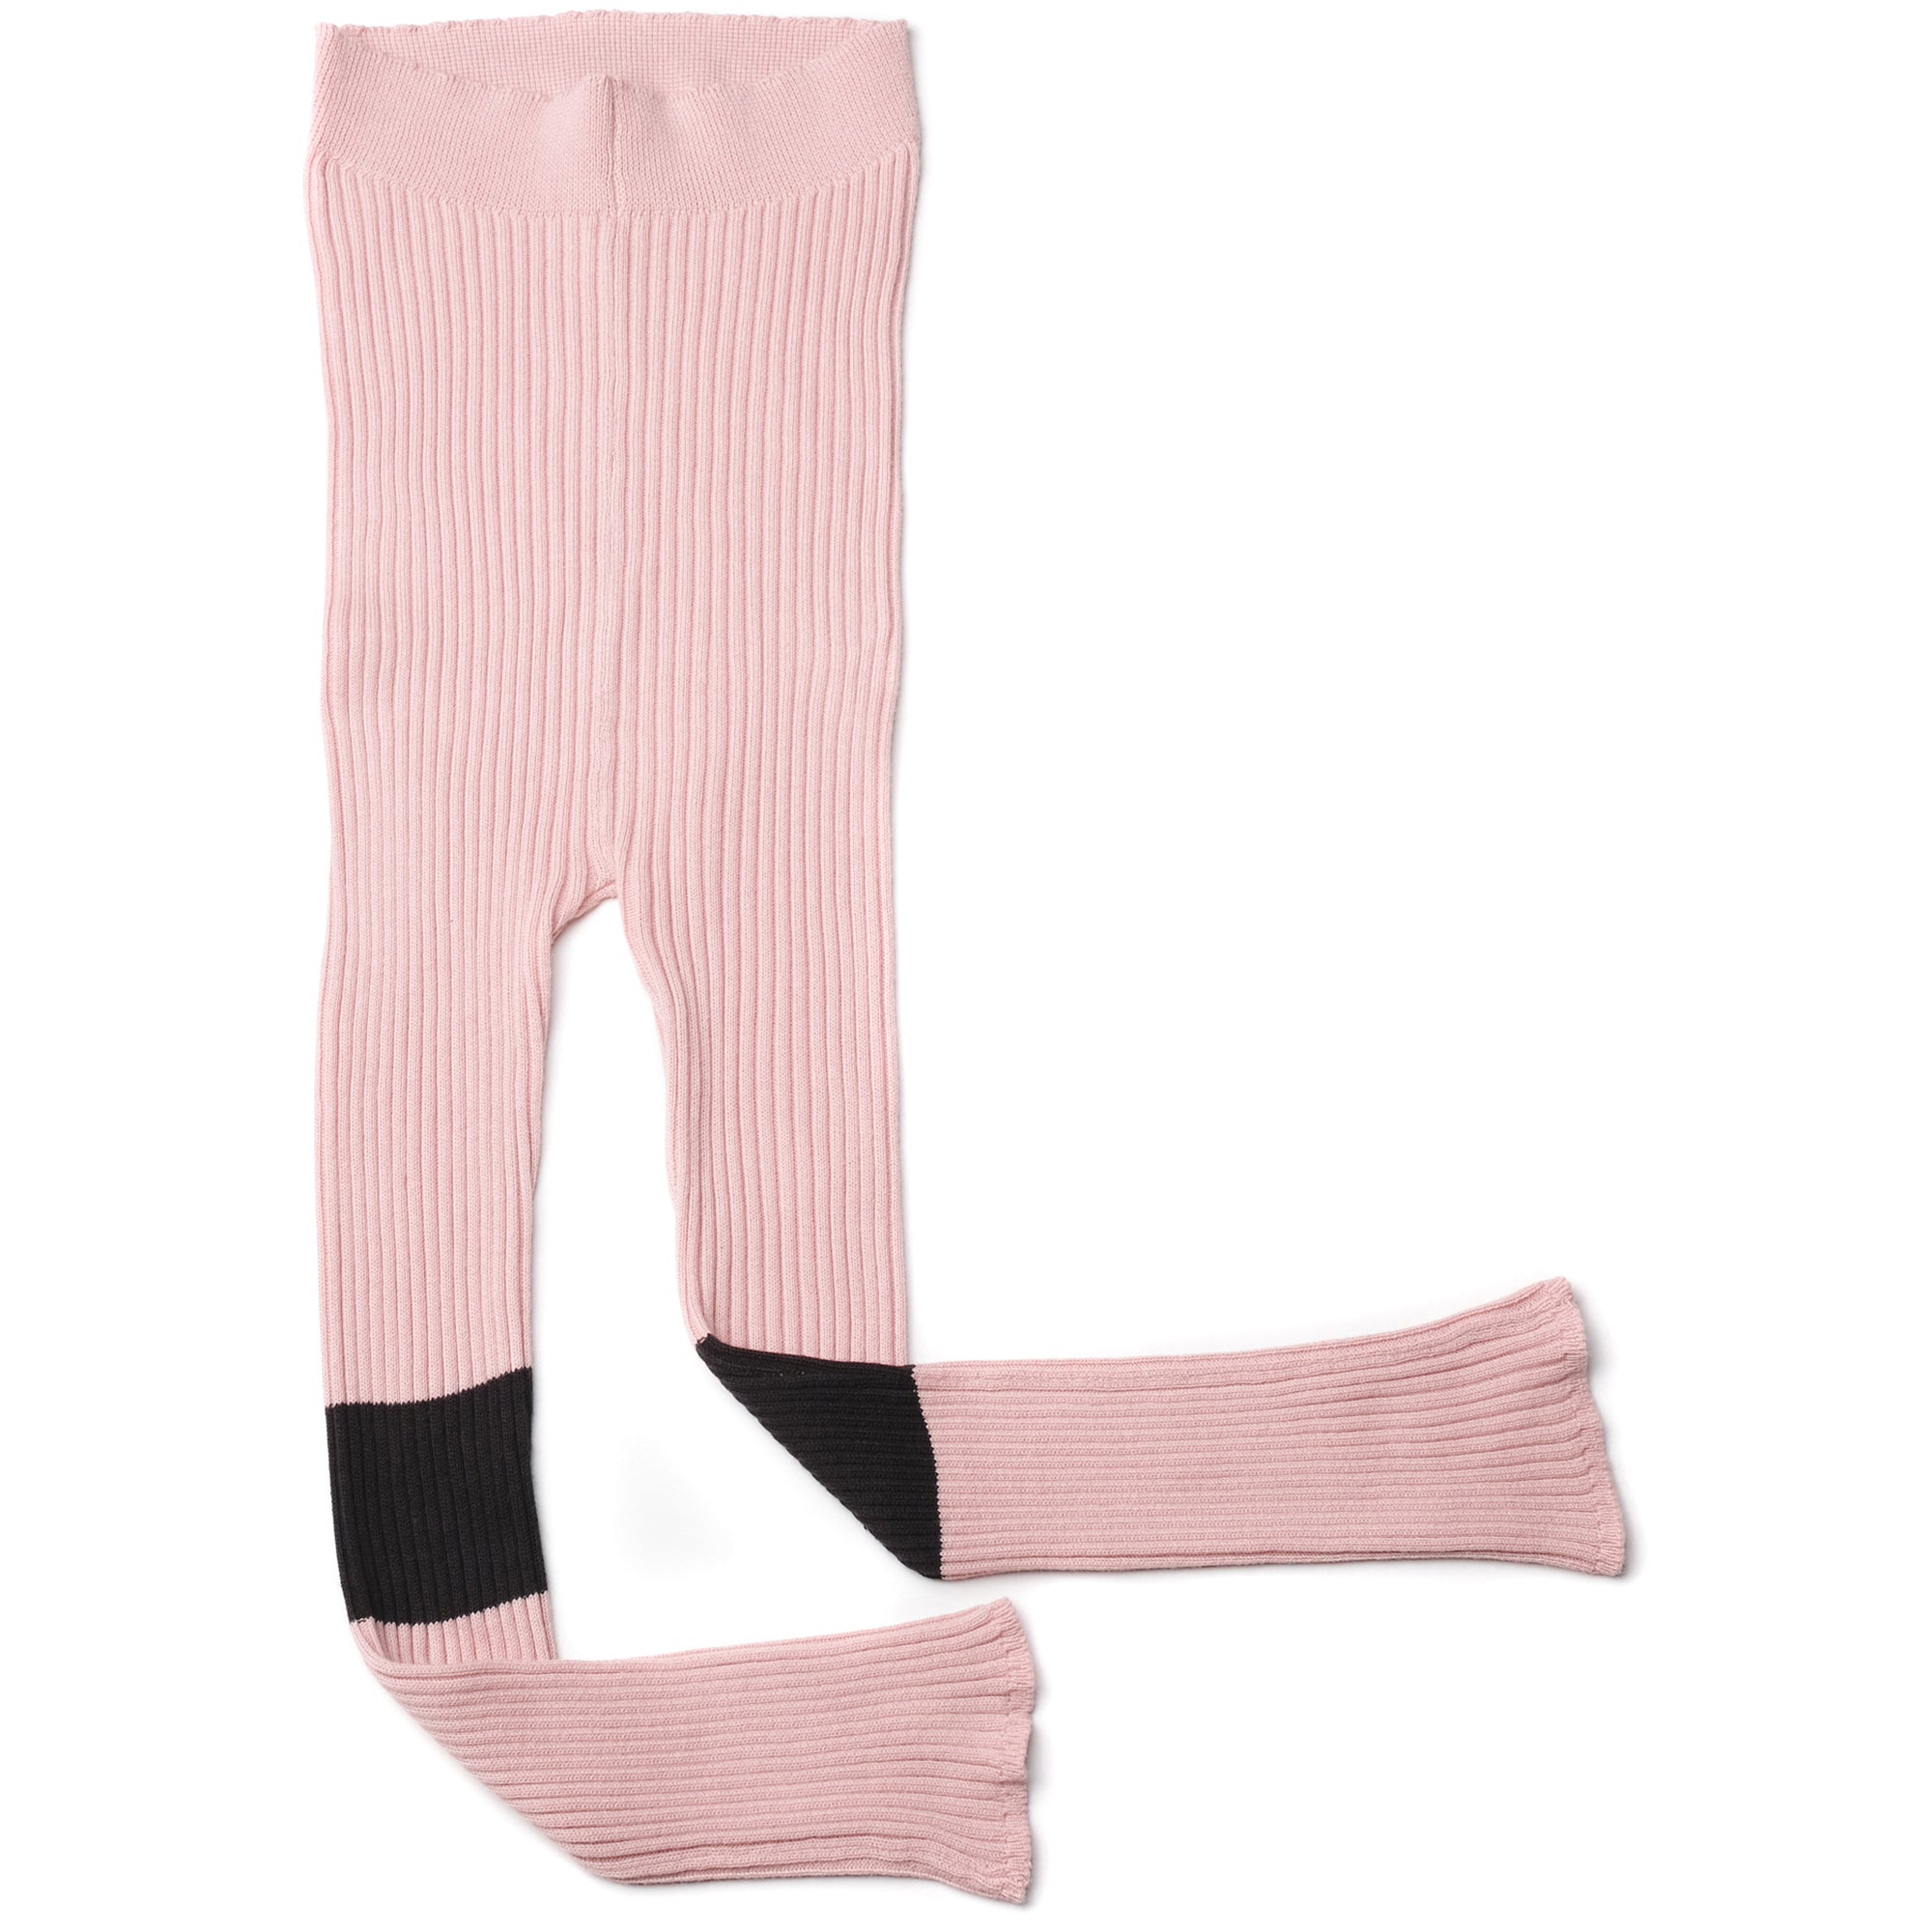 Girls Pale Pink Cotton Leggings